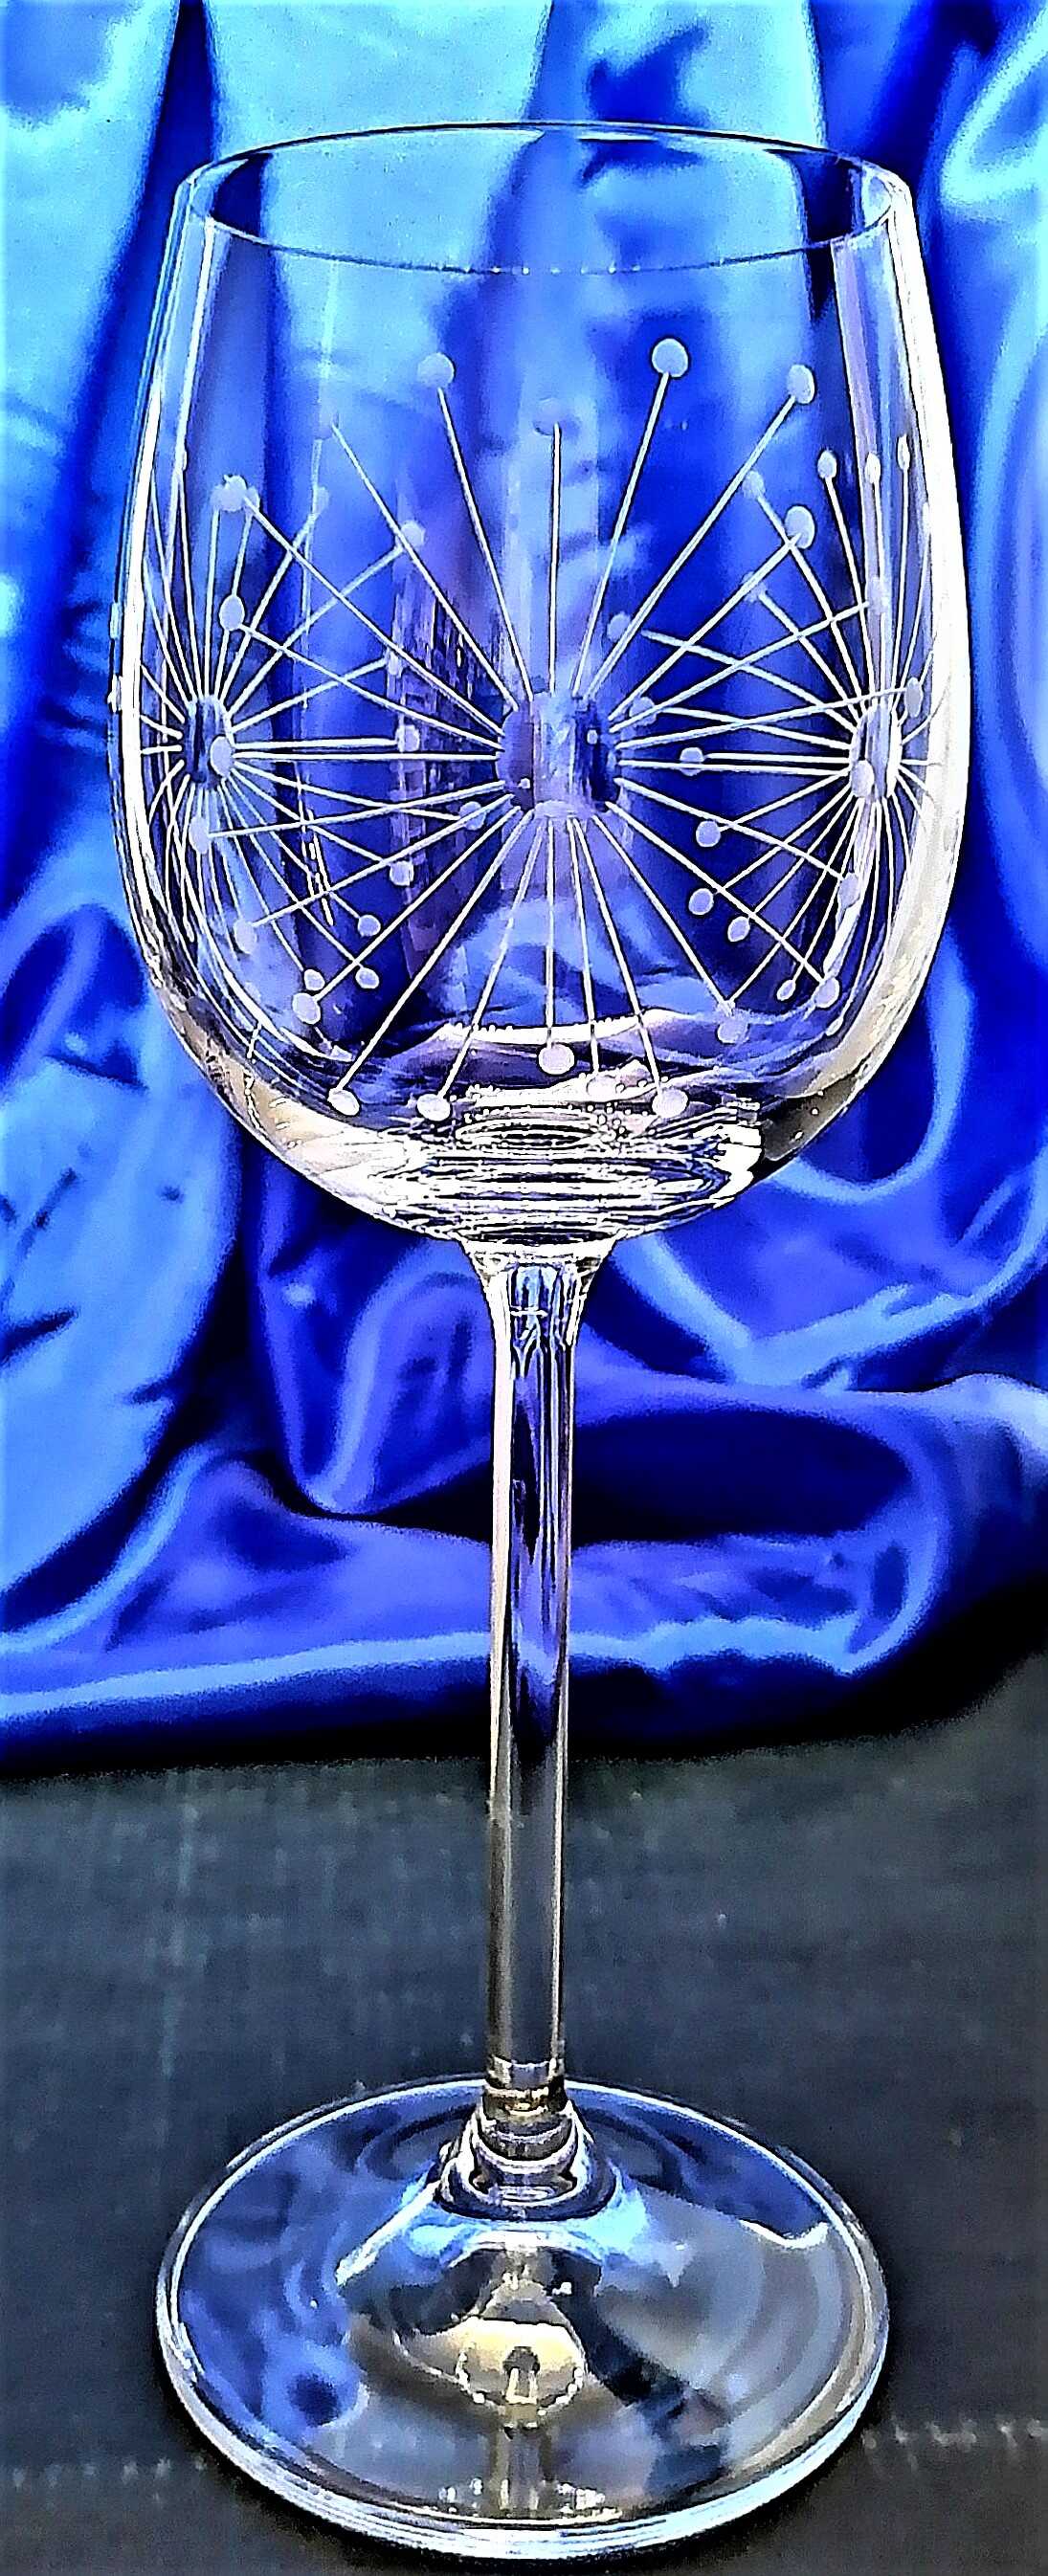 LsG-Crystal Skleničky na bílé víno ručně ryté broušené dekor Pampeliška dárkové balení satén Erika-69982 260 ml 2 Ks.